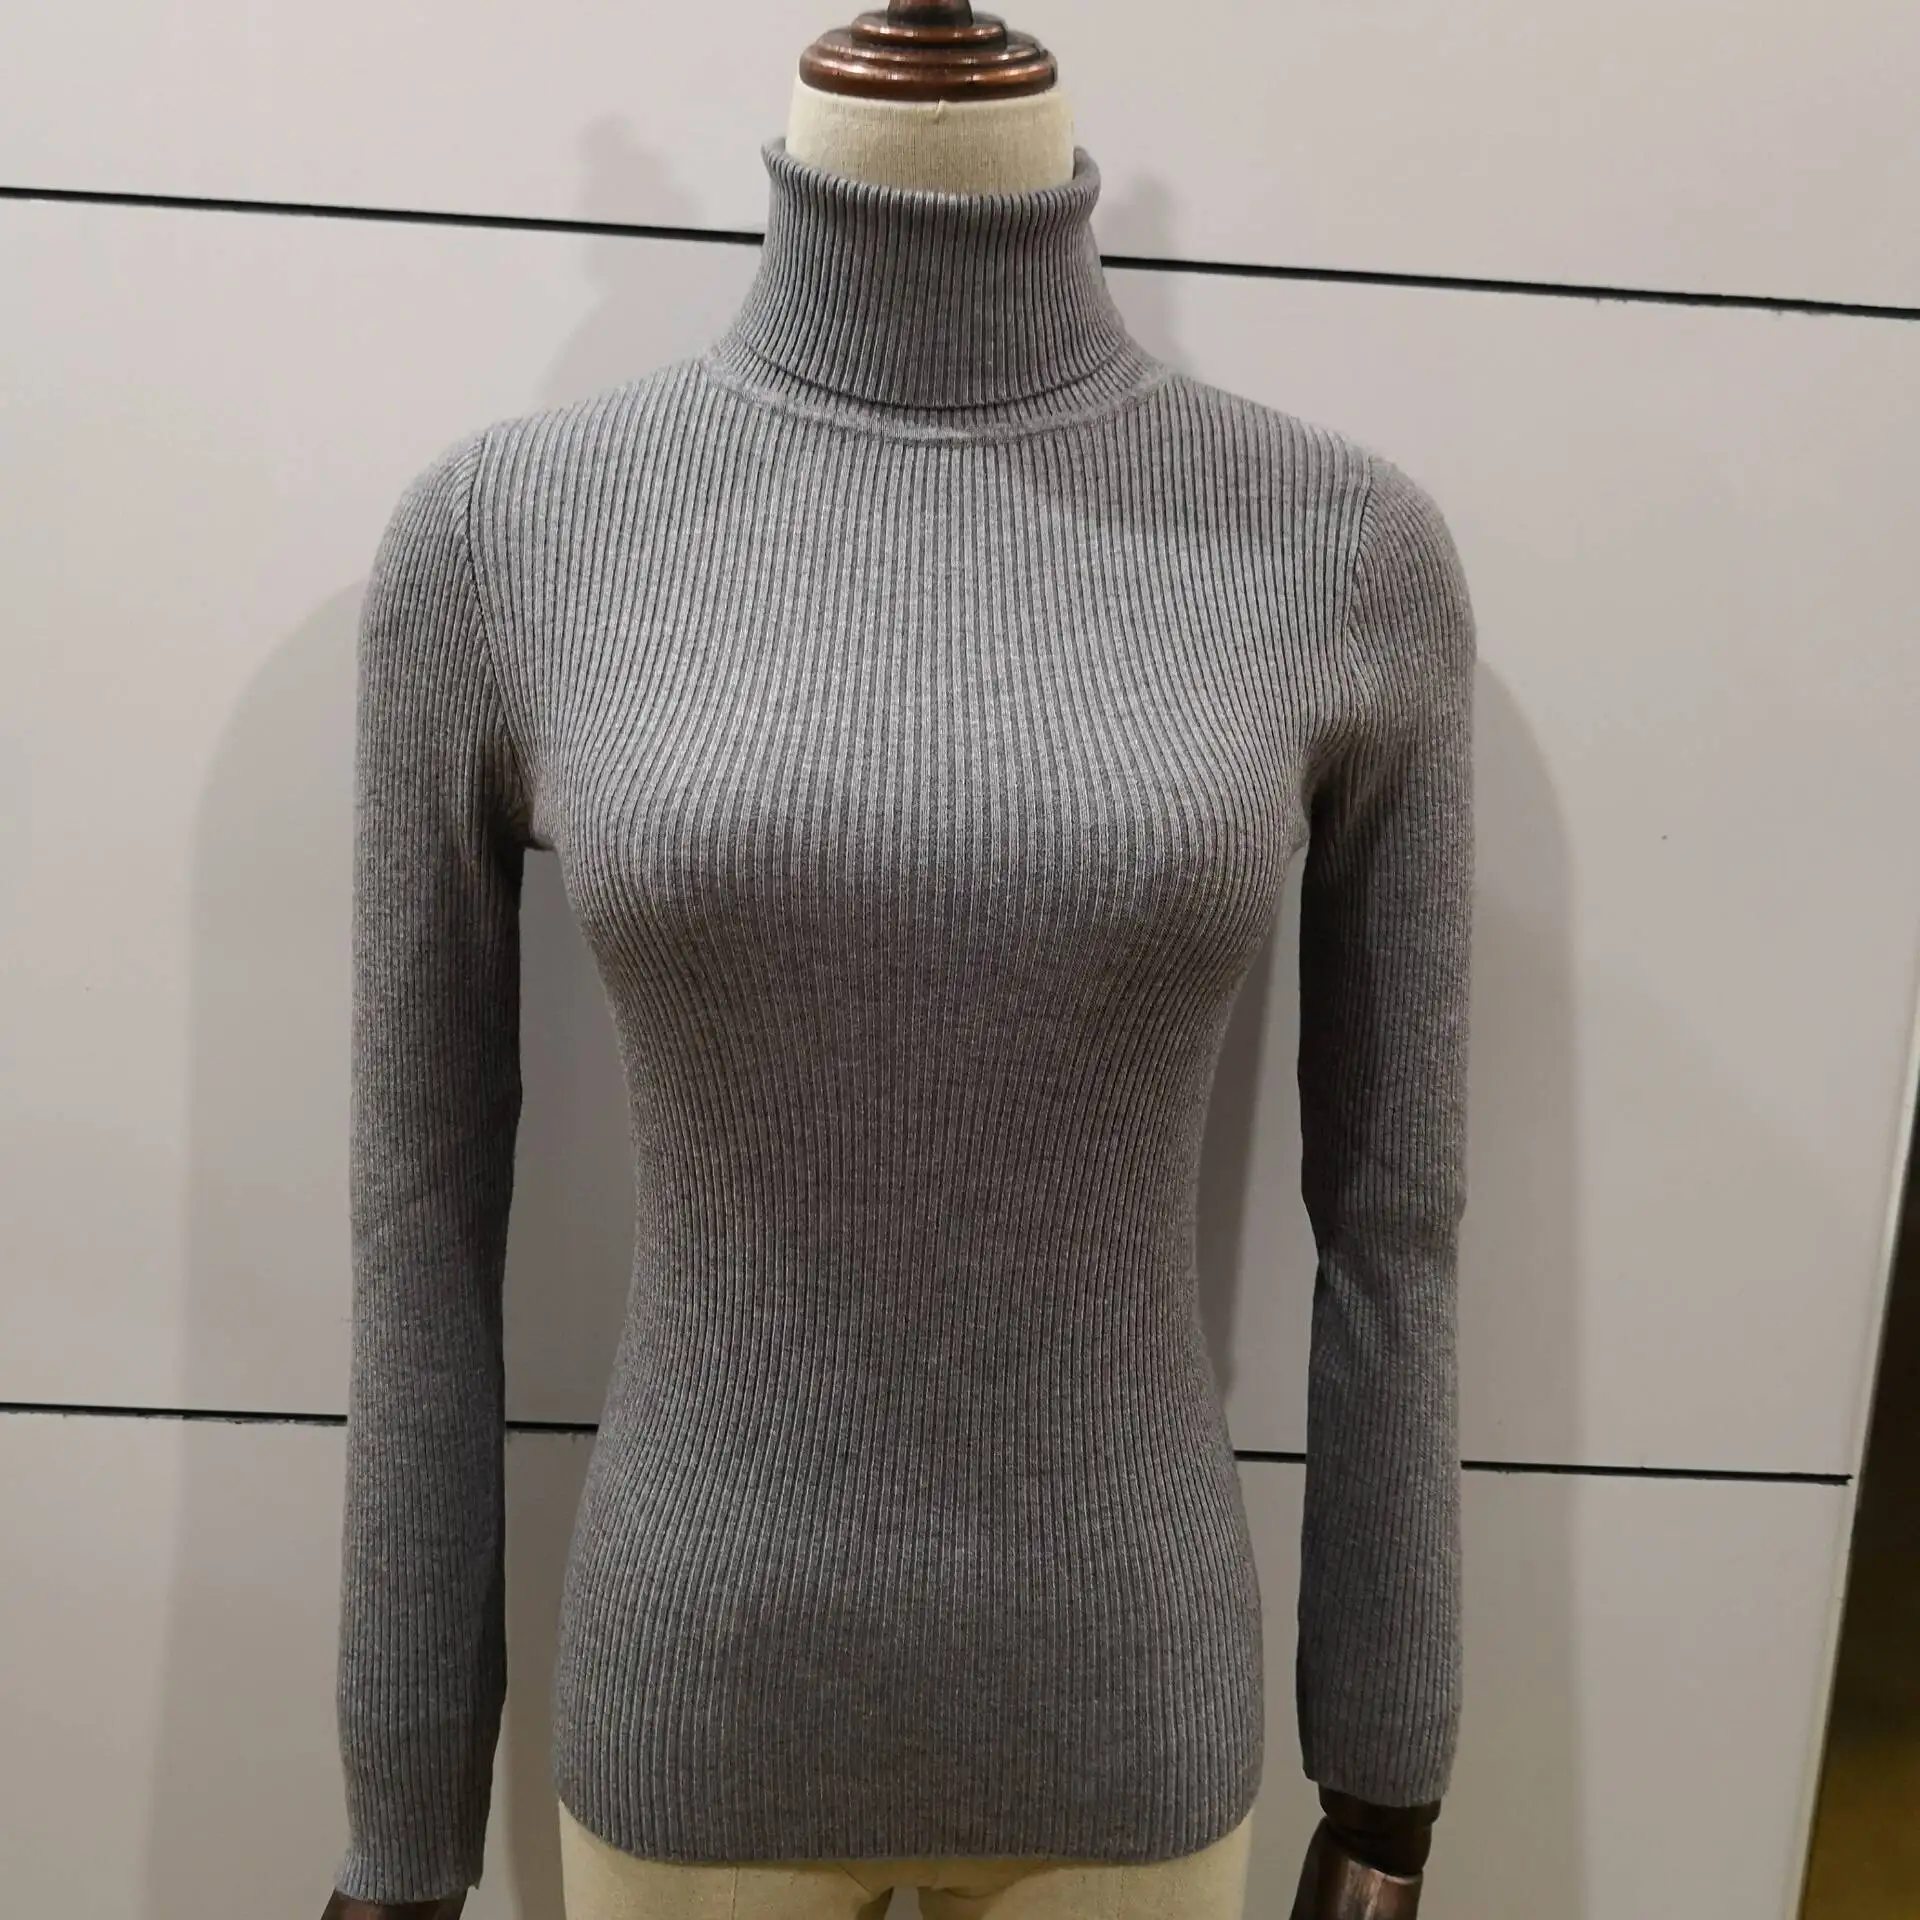 Осенне-зимний женский вязаный свитер с высоким воротом Повседневный мягкий джемпер badycon модный тонкий Femme эластичные пуловеры обтягивающие